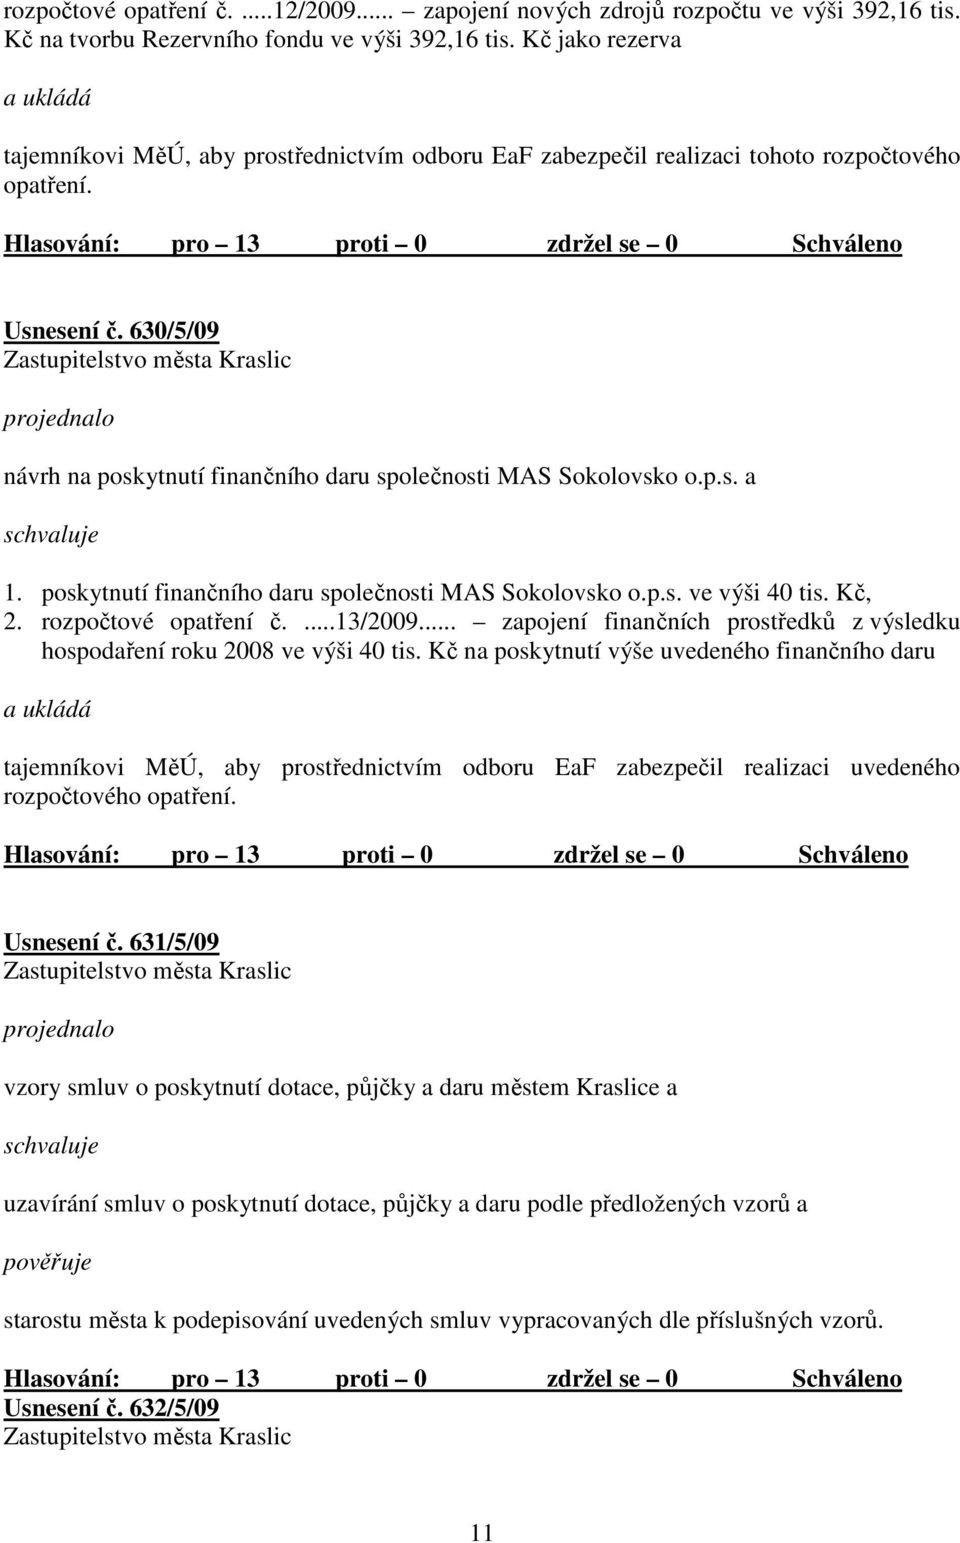 630/5/09 návrh na poskytnutí finančního daru společnosti MAS Sokolovsko o.p.s. a 1. poskytnutí finančního daru společnosti MAS Sokolovsko o.p.s. ve výši 40 tis. Kč, 2. rozpočtové opatření č....13/2009.